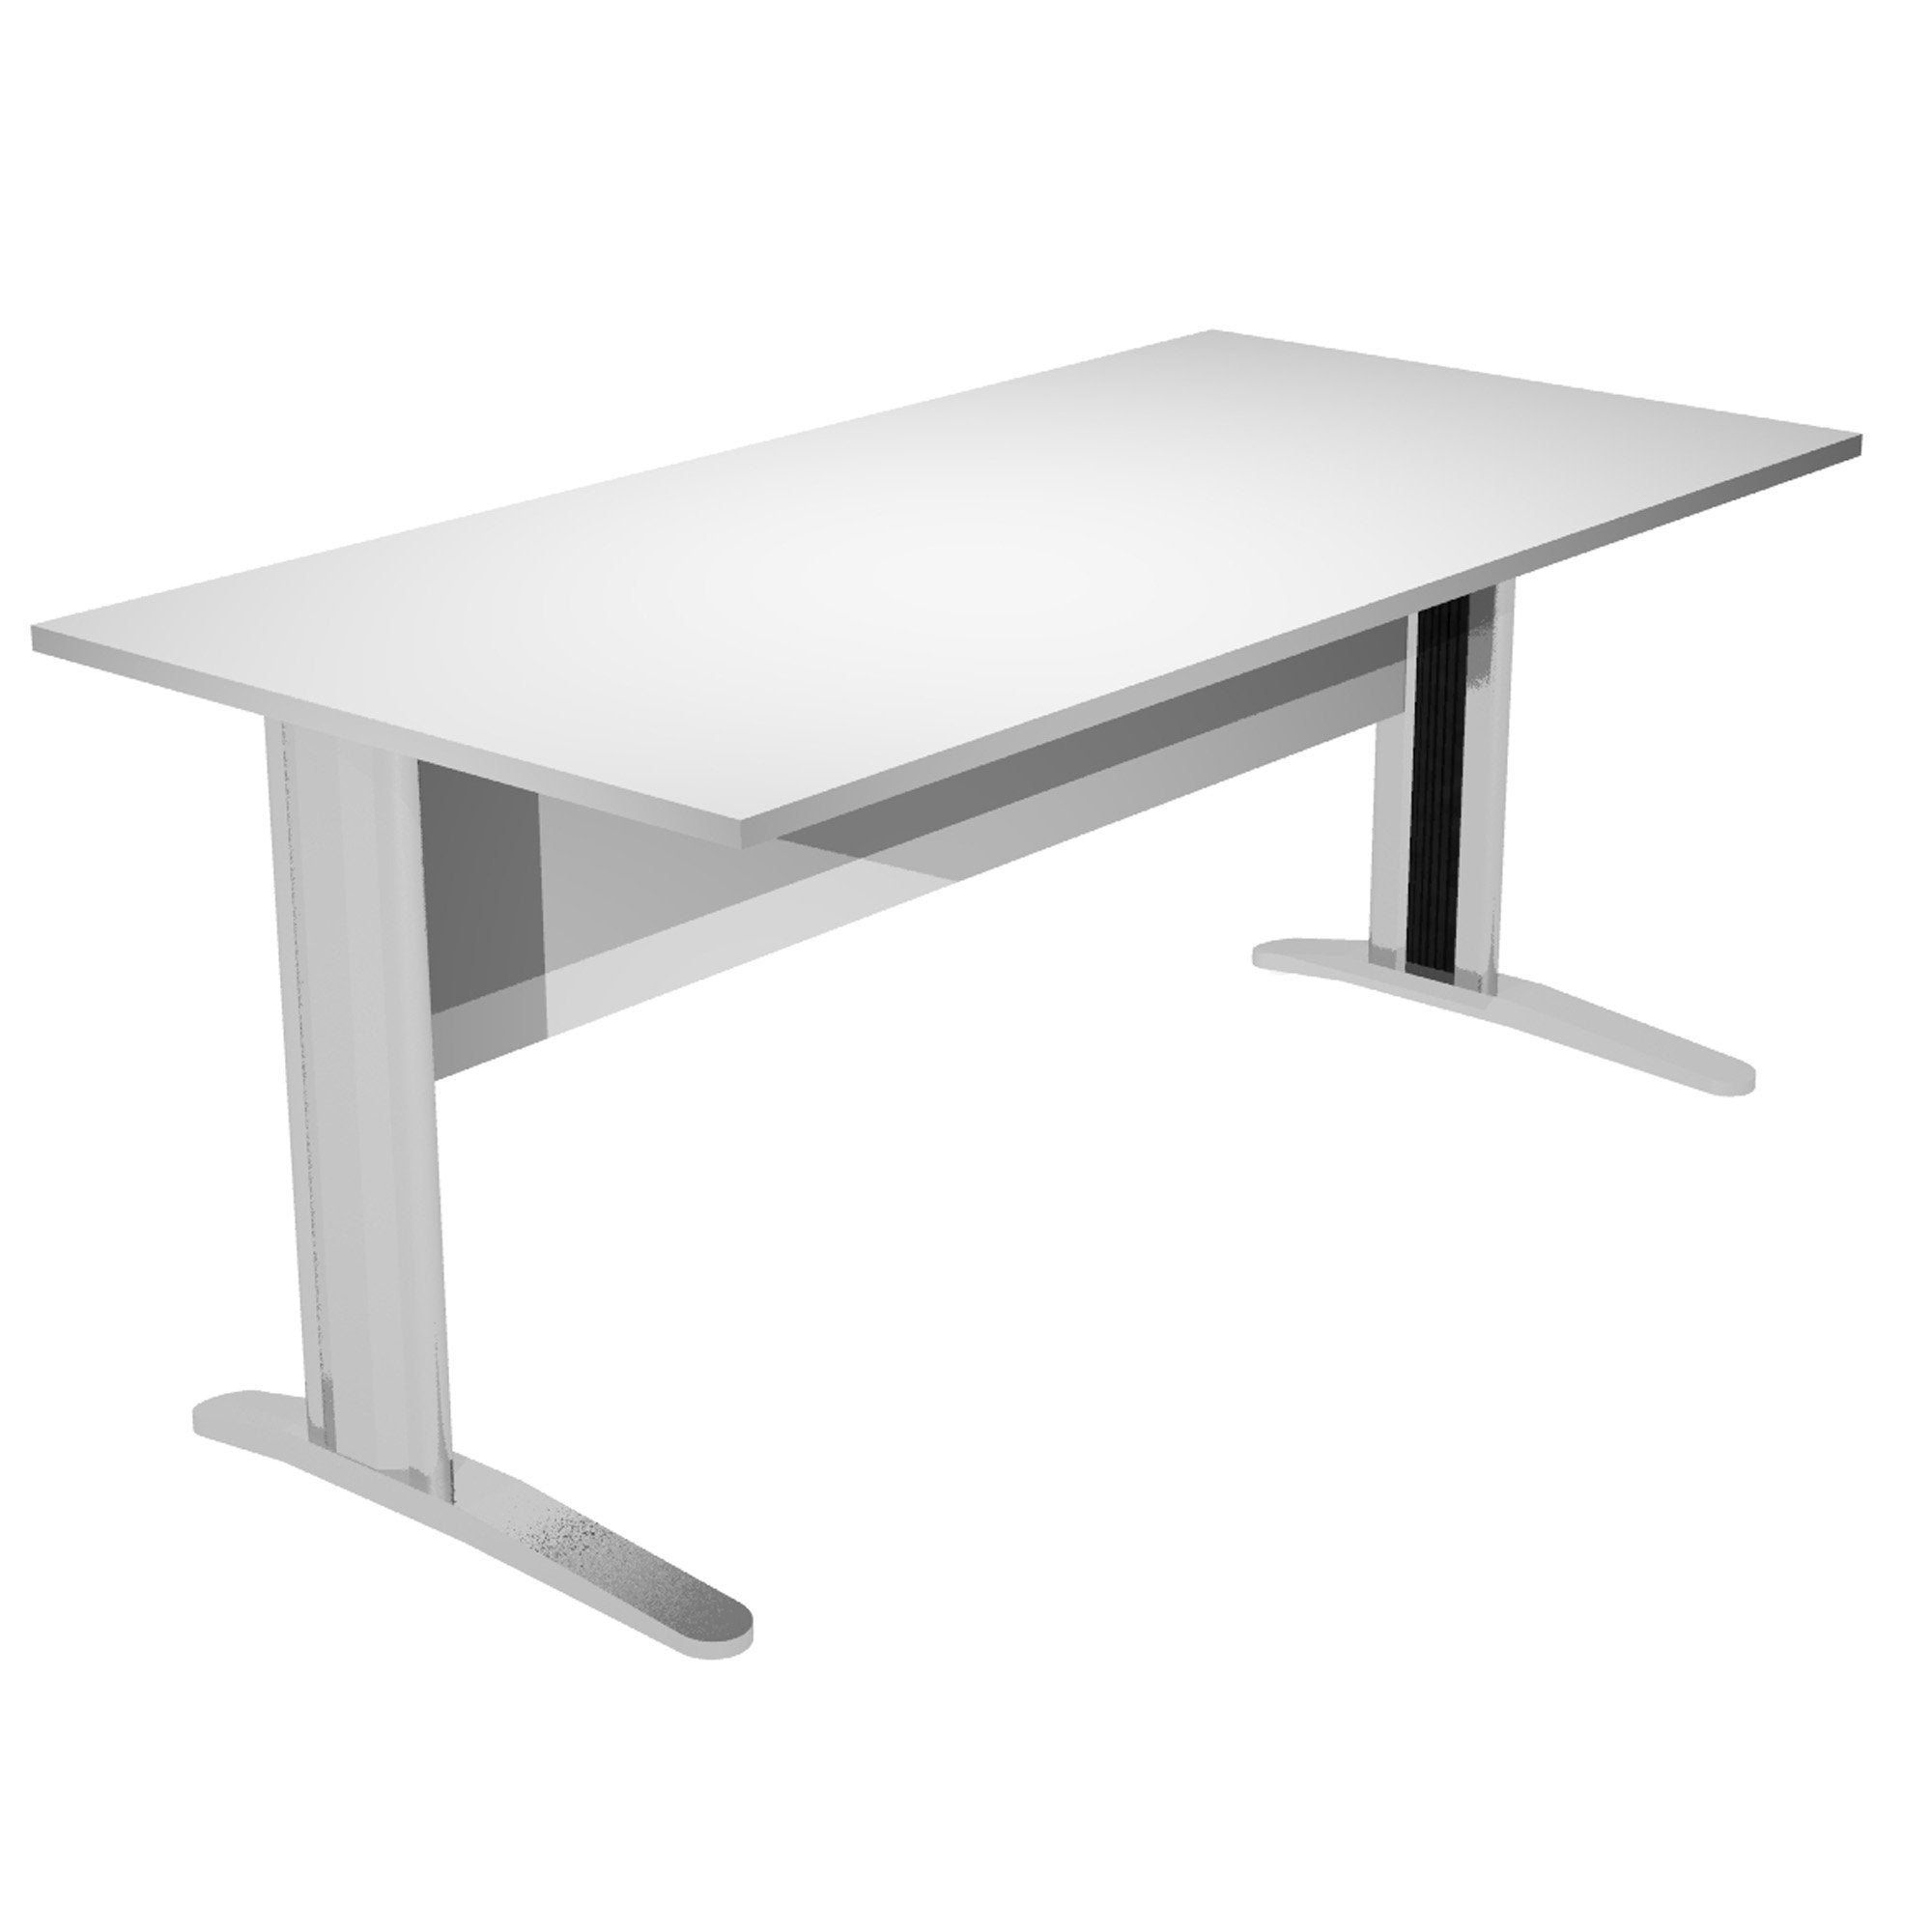 artexport-scrivania-lineare-120x80cm-grigio-fianchi-vernic-effetto-cromato-easy